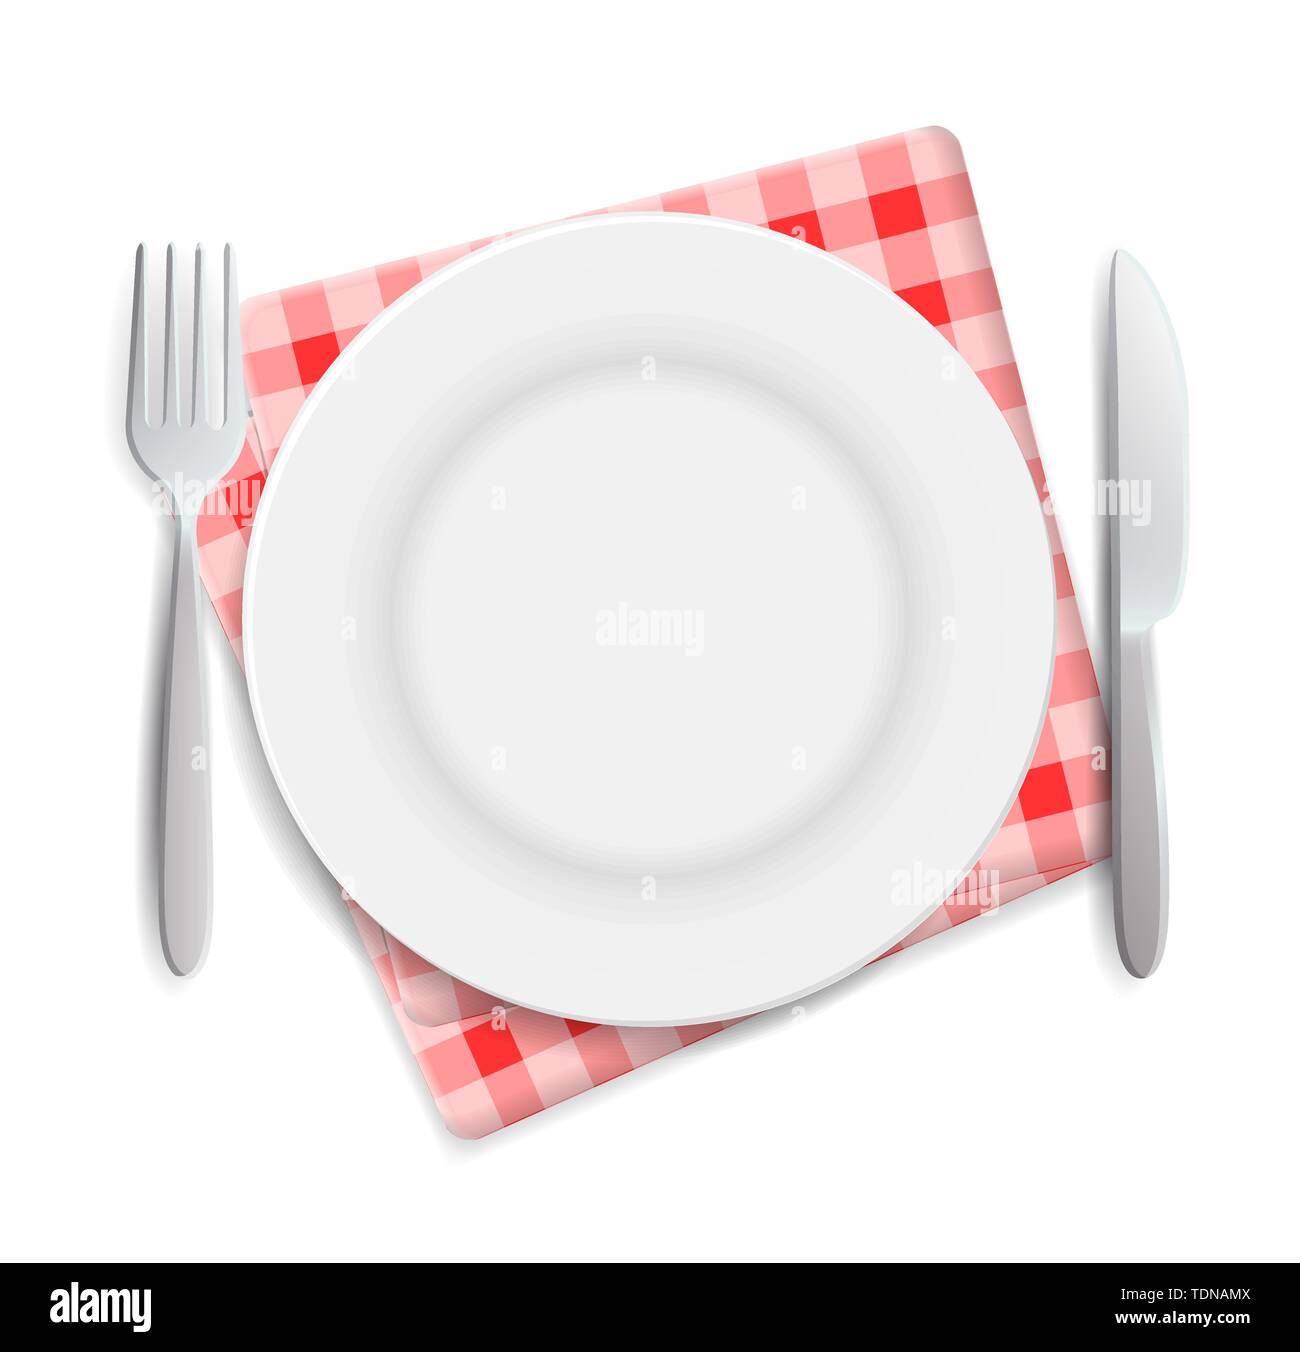 La plaque vide réaliste, fourchette et couteau rouge à carreaux servi sur une vue supérieure de la serviette illustration vectorielle. Peut être utilisé pour la publicité. Illustration de Vecteur